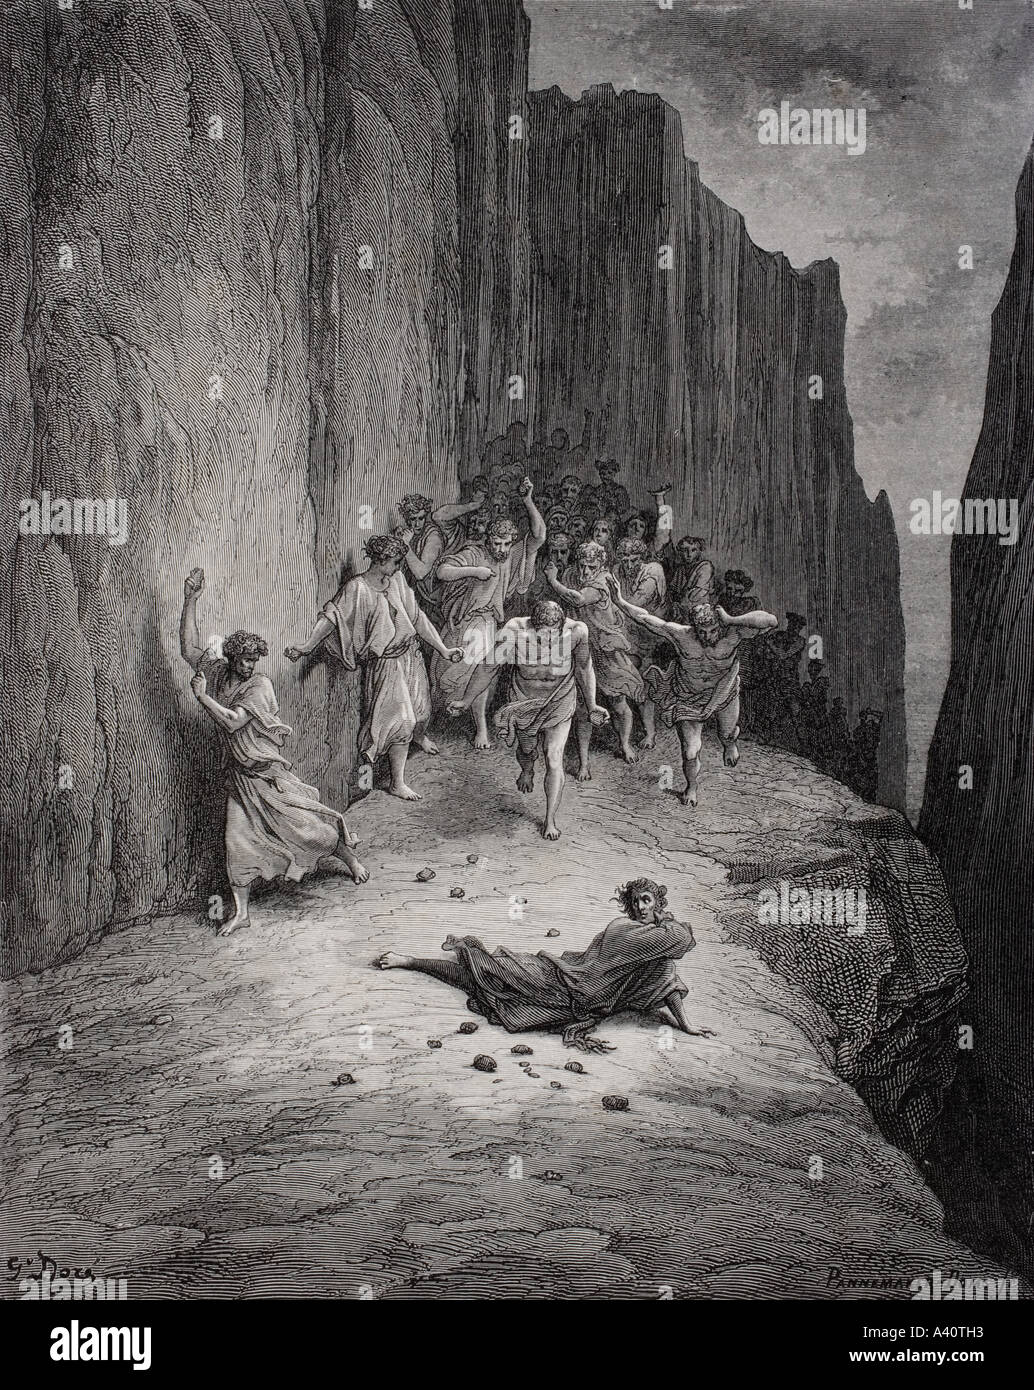 Illustrazione per il Purgatorio di Dante Alighieri. Canto XV, linee 103 e 106 da Gustave Dore, 1832 - 1883. Artista francese e illustrator. Foto Stock